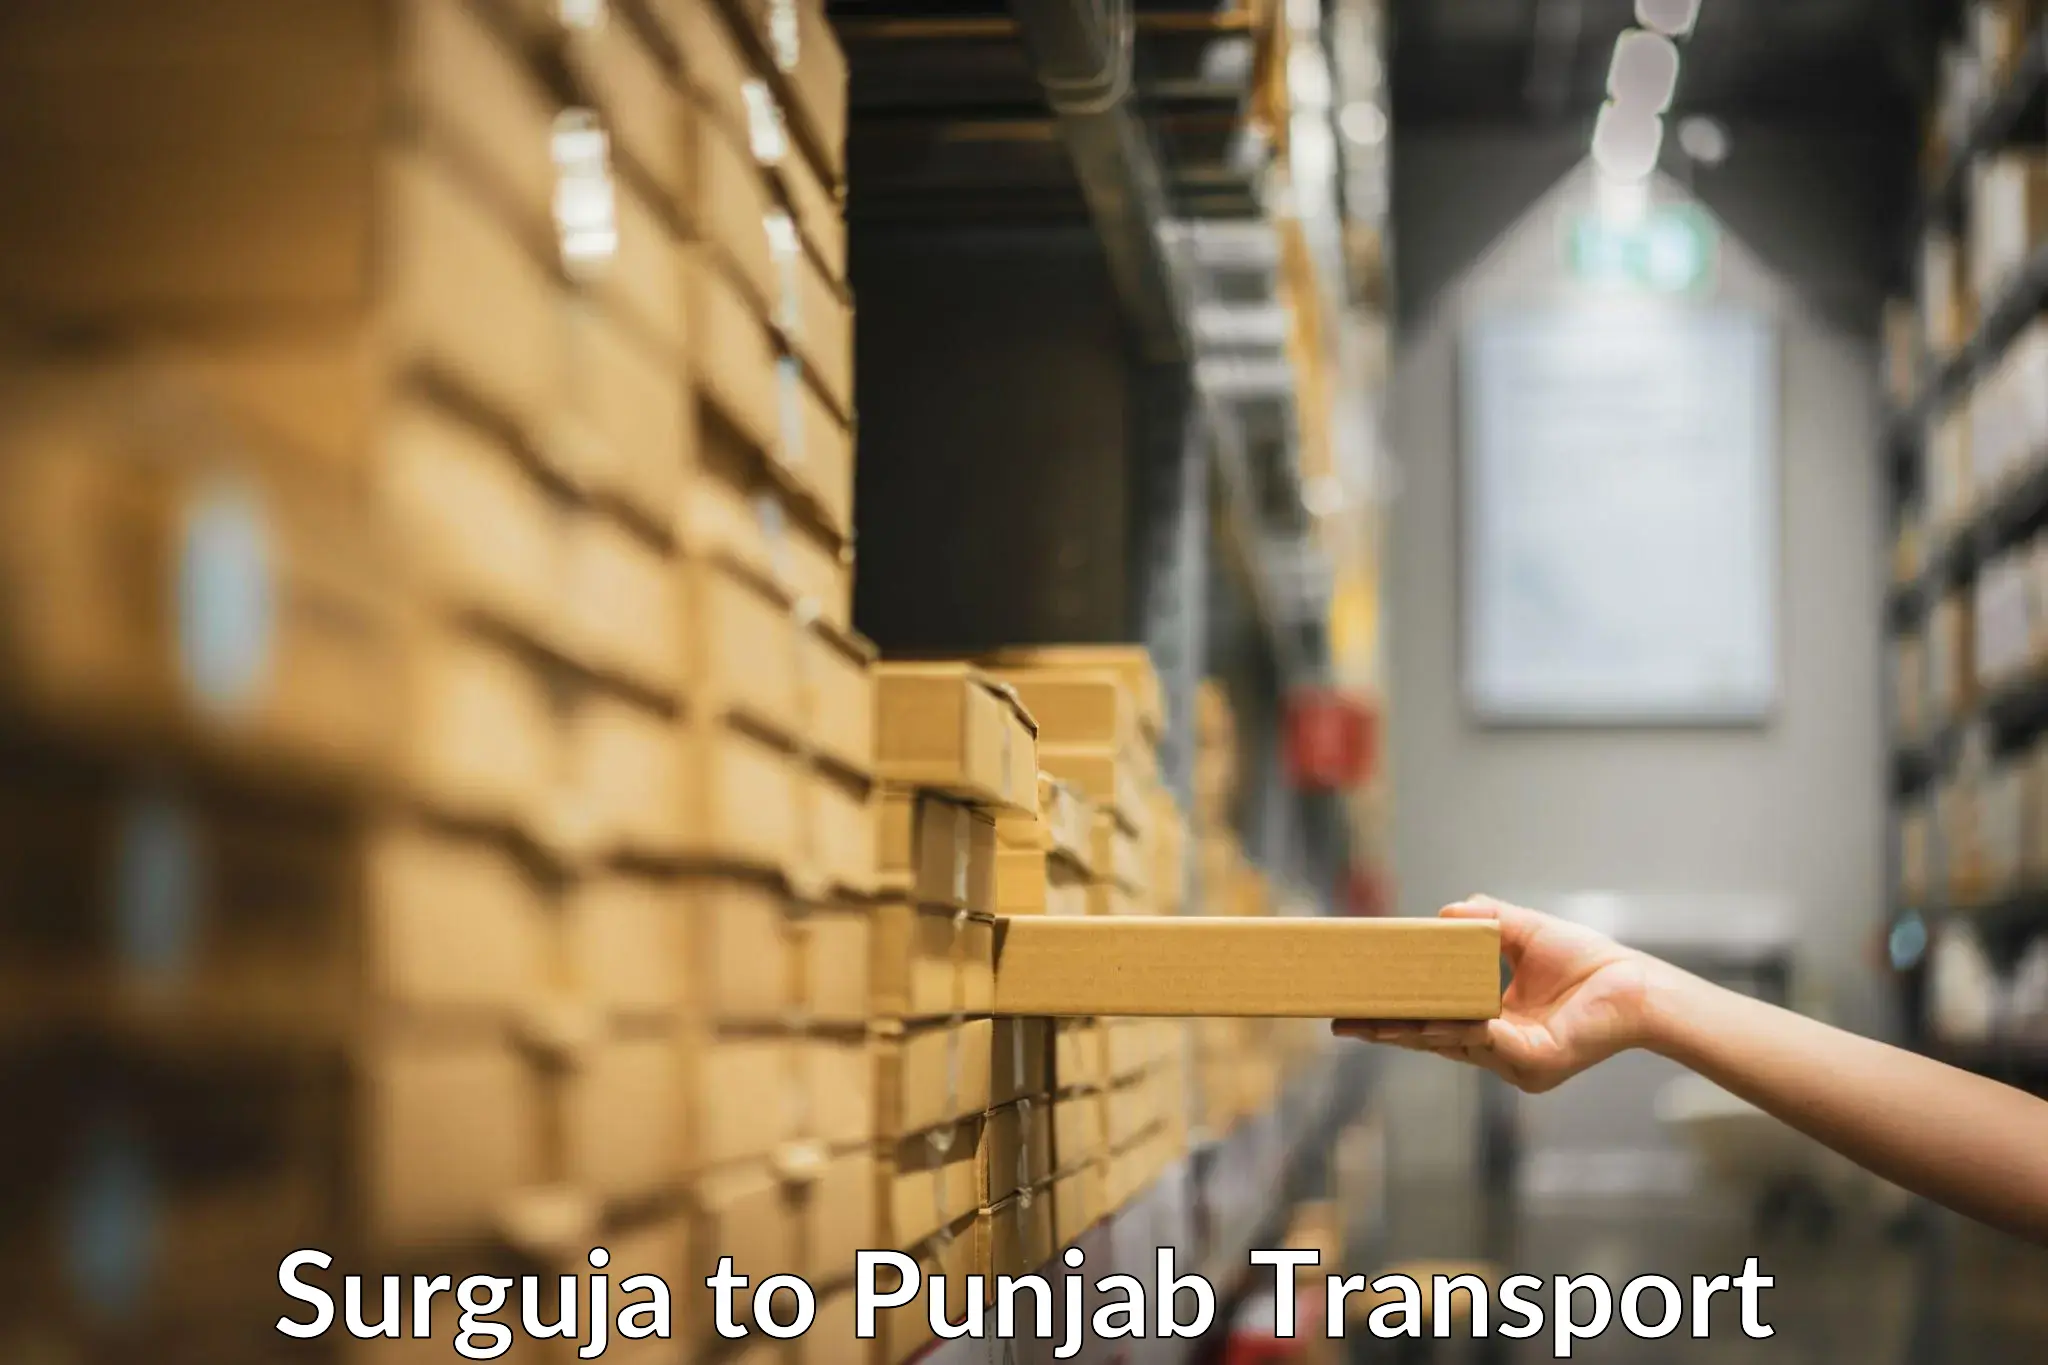 Land transport services Surguja to Punjab